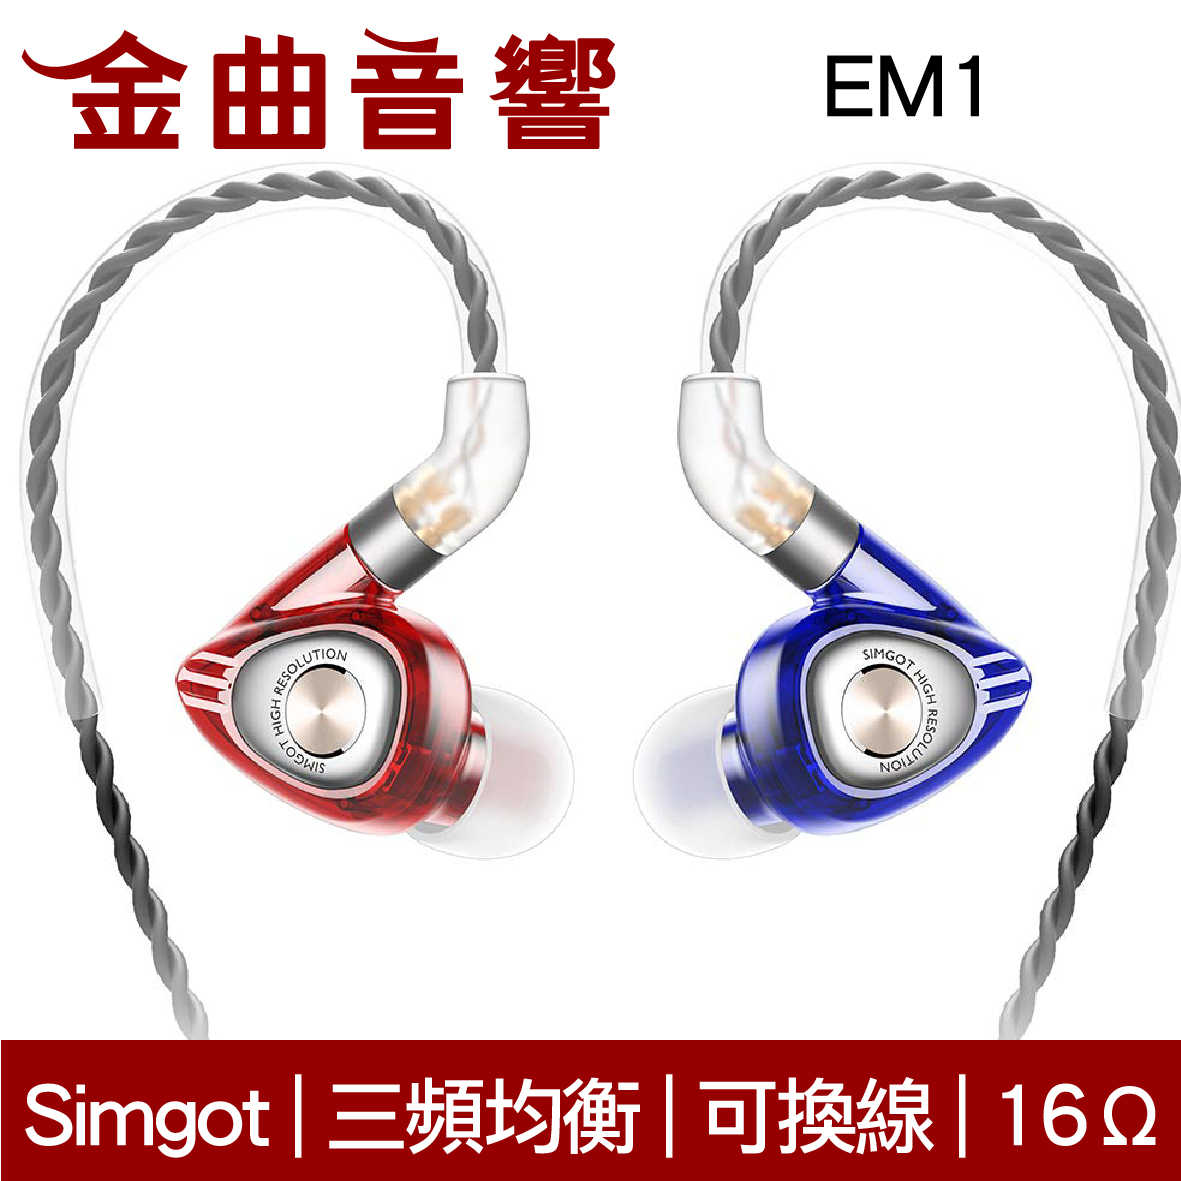 SIMGOT 銅雀 EM1 典雅黑 洛神系列 動圈 入耳式耳機 | 金曲音響